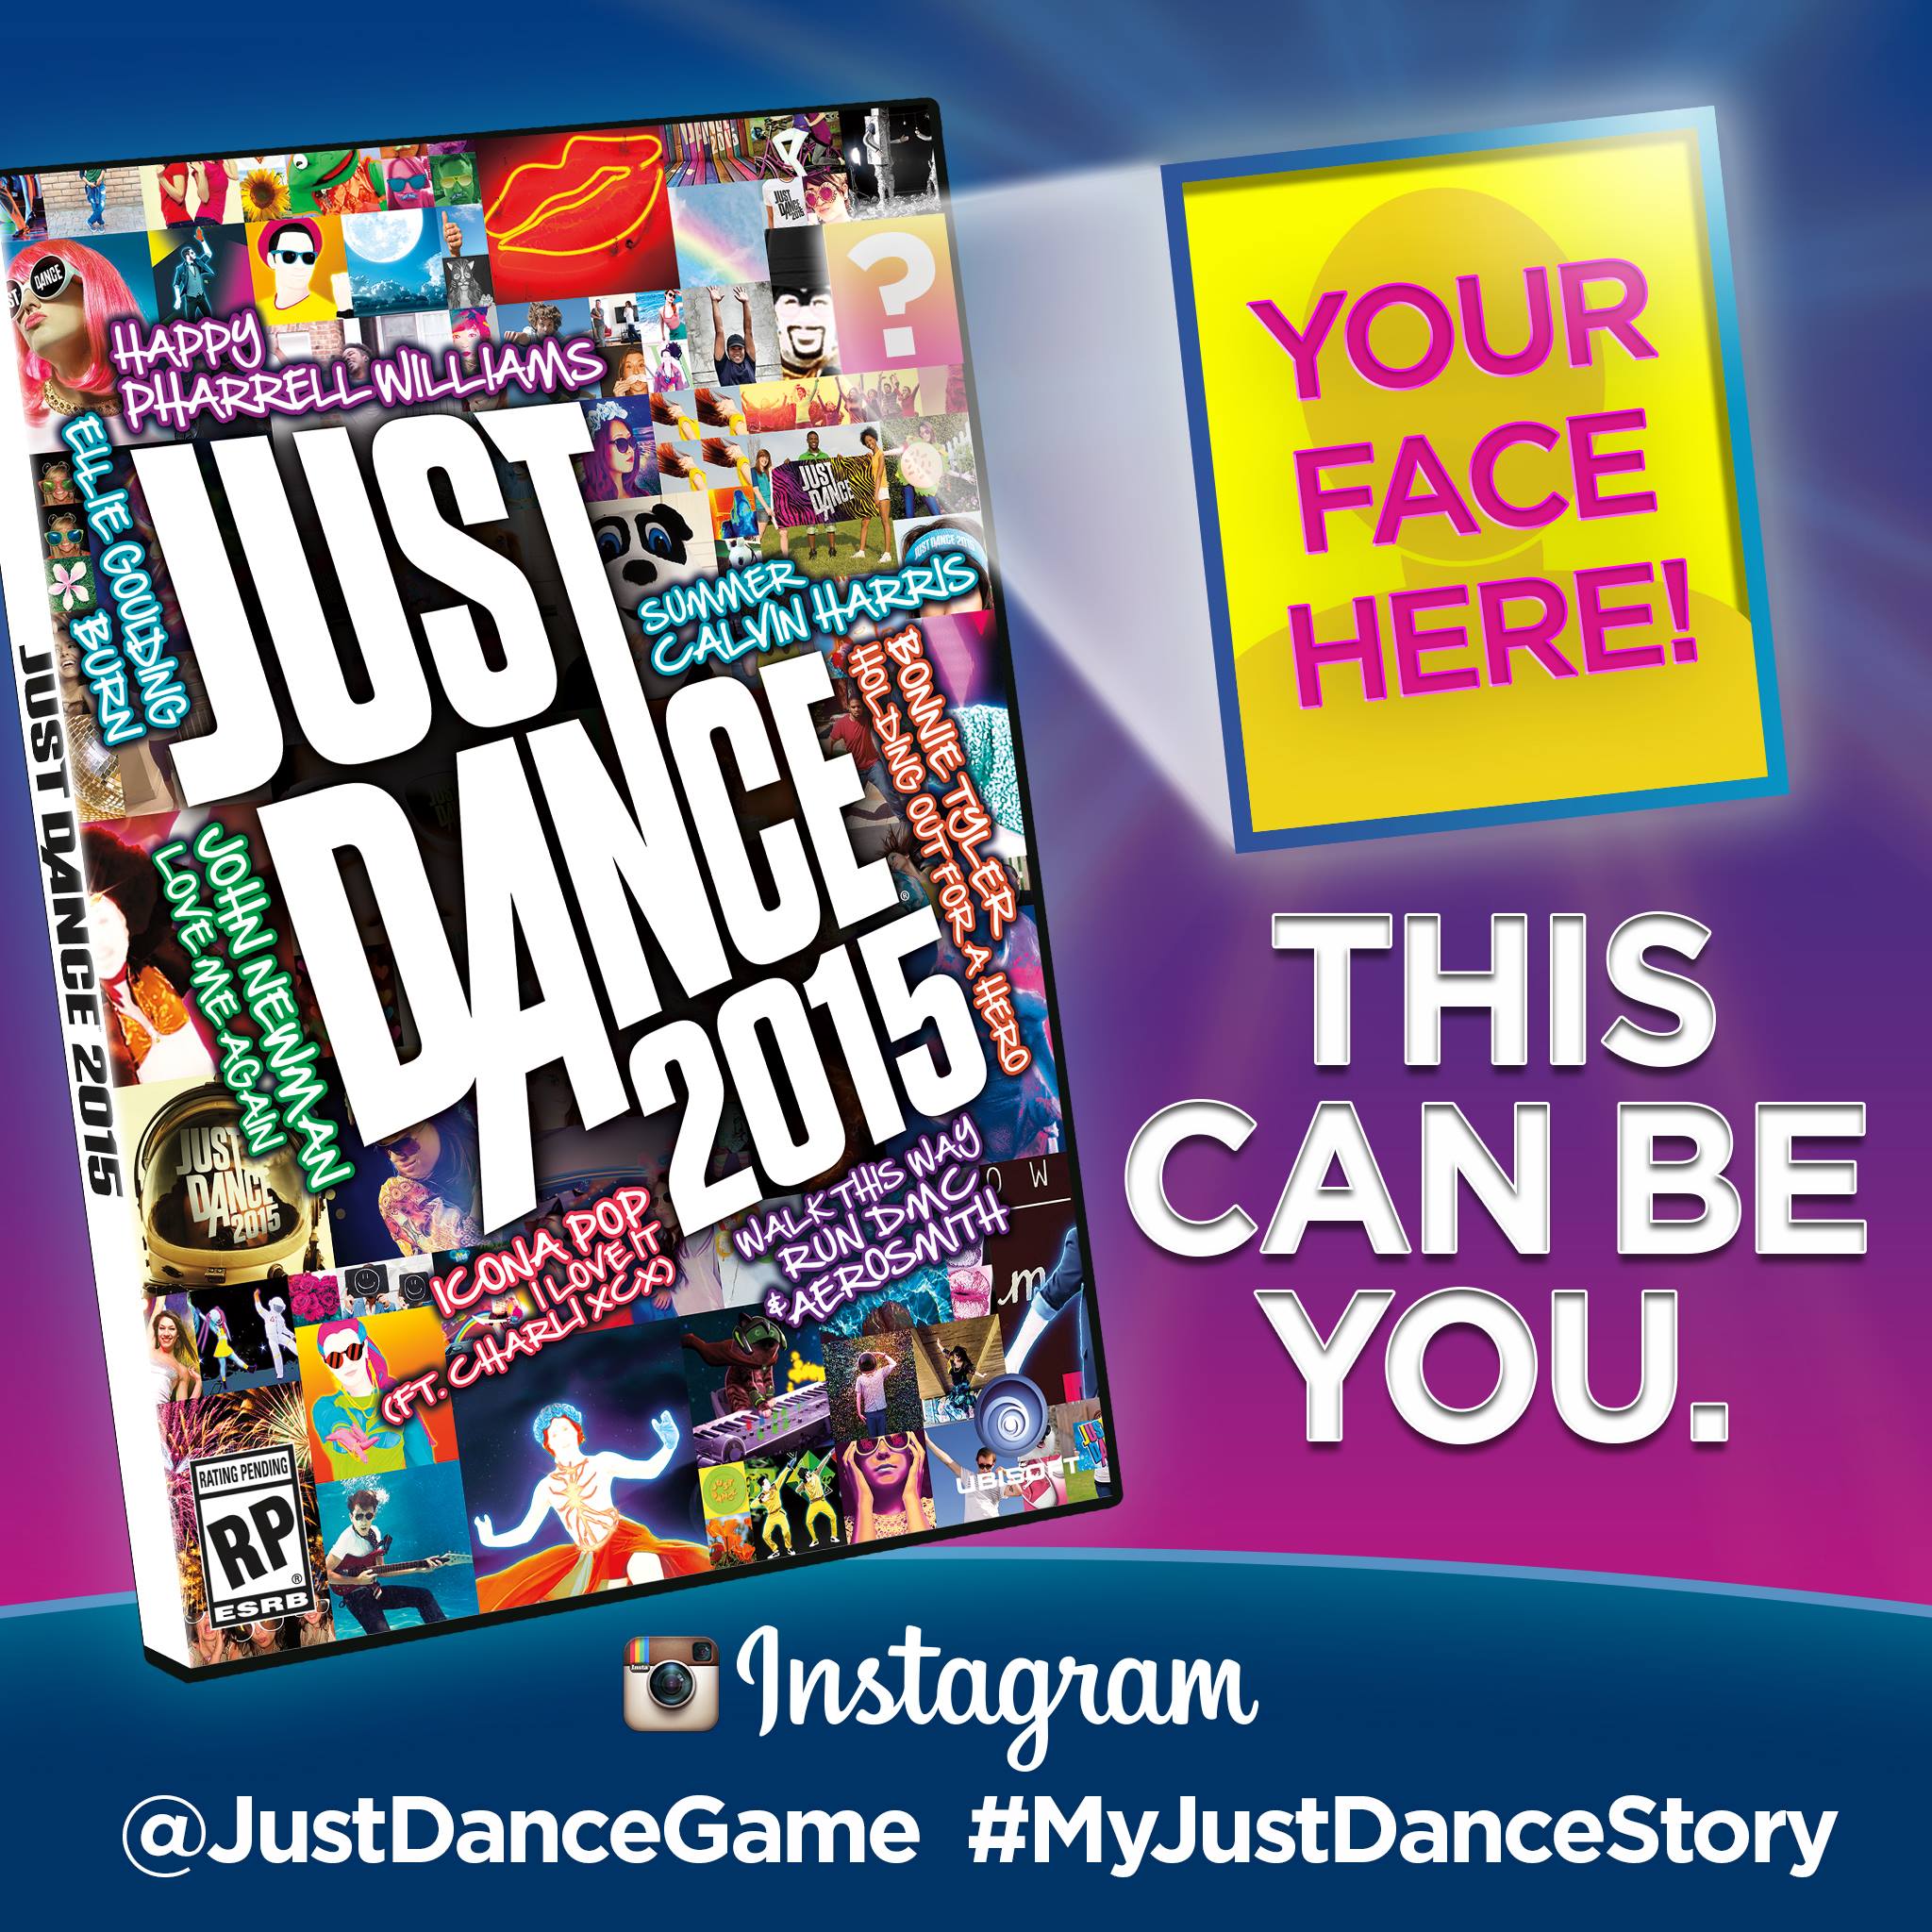 Just Dance 2015 Box. Just Dance 2014 Box. Just Dance 2015 список песен. Just Dance Now.